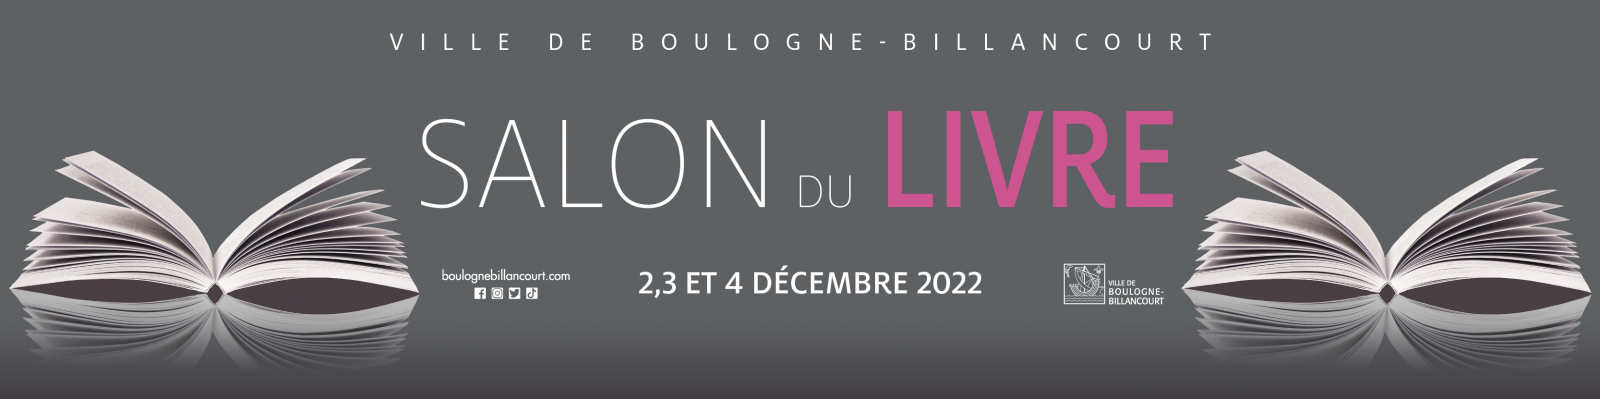 Salon du livre de Boulogne-Billancourt 2022